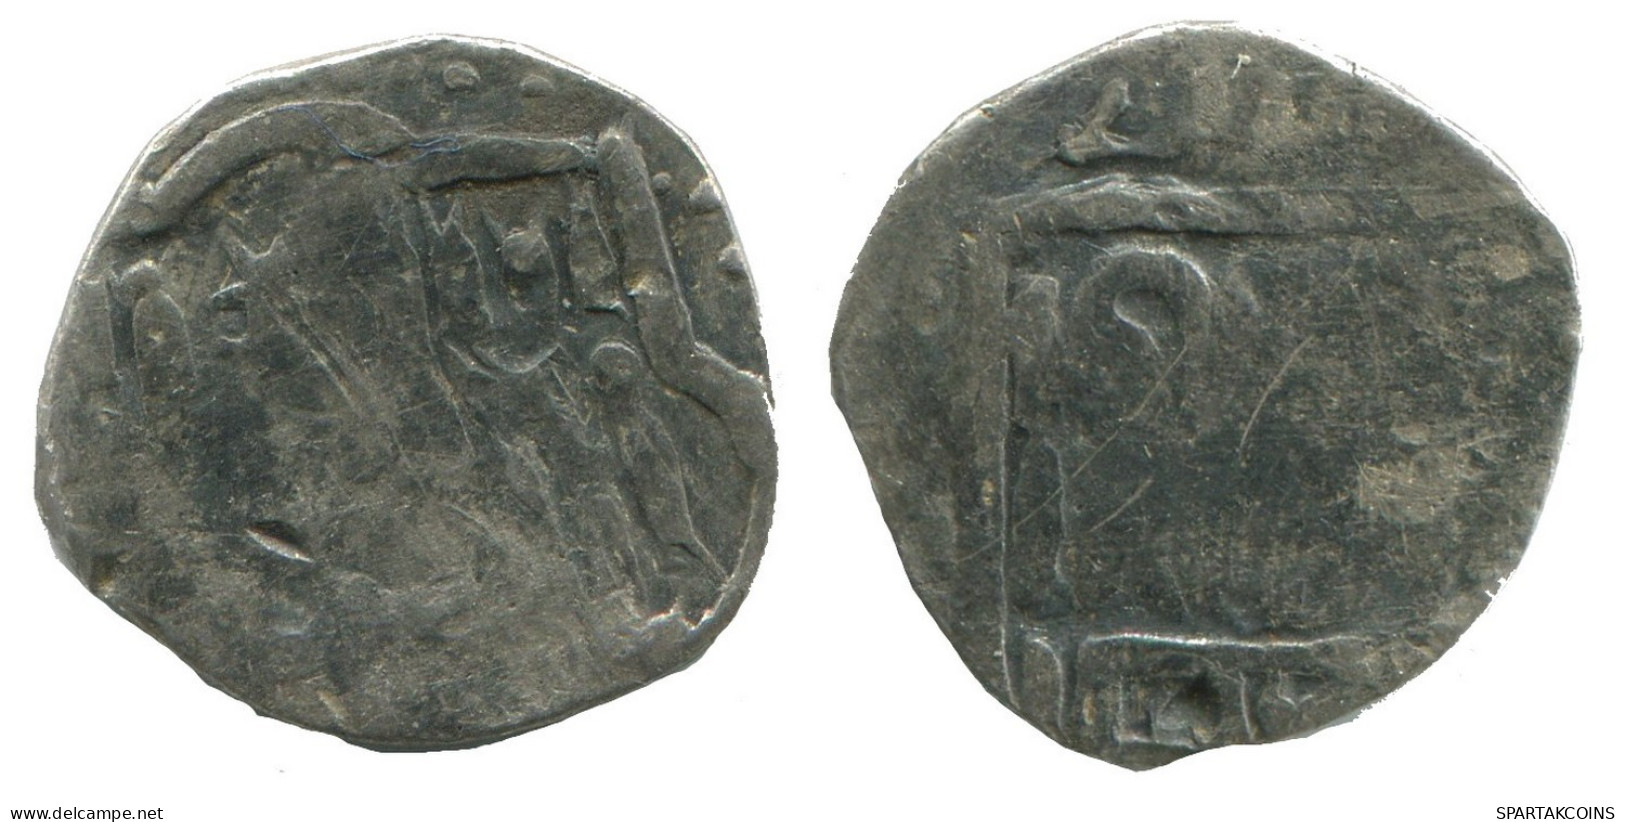 GOLDEN HORDE Silver Dirham Medieval Islamic Coin 1.1g/14mm #NNN2030.8.U.A - Islamic